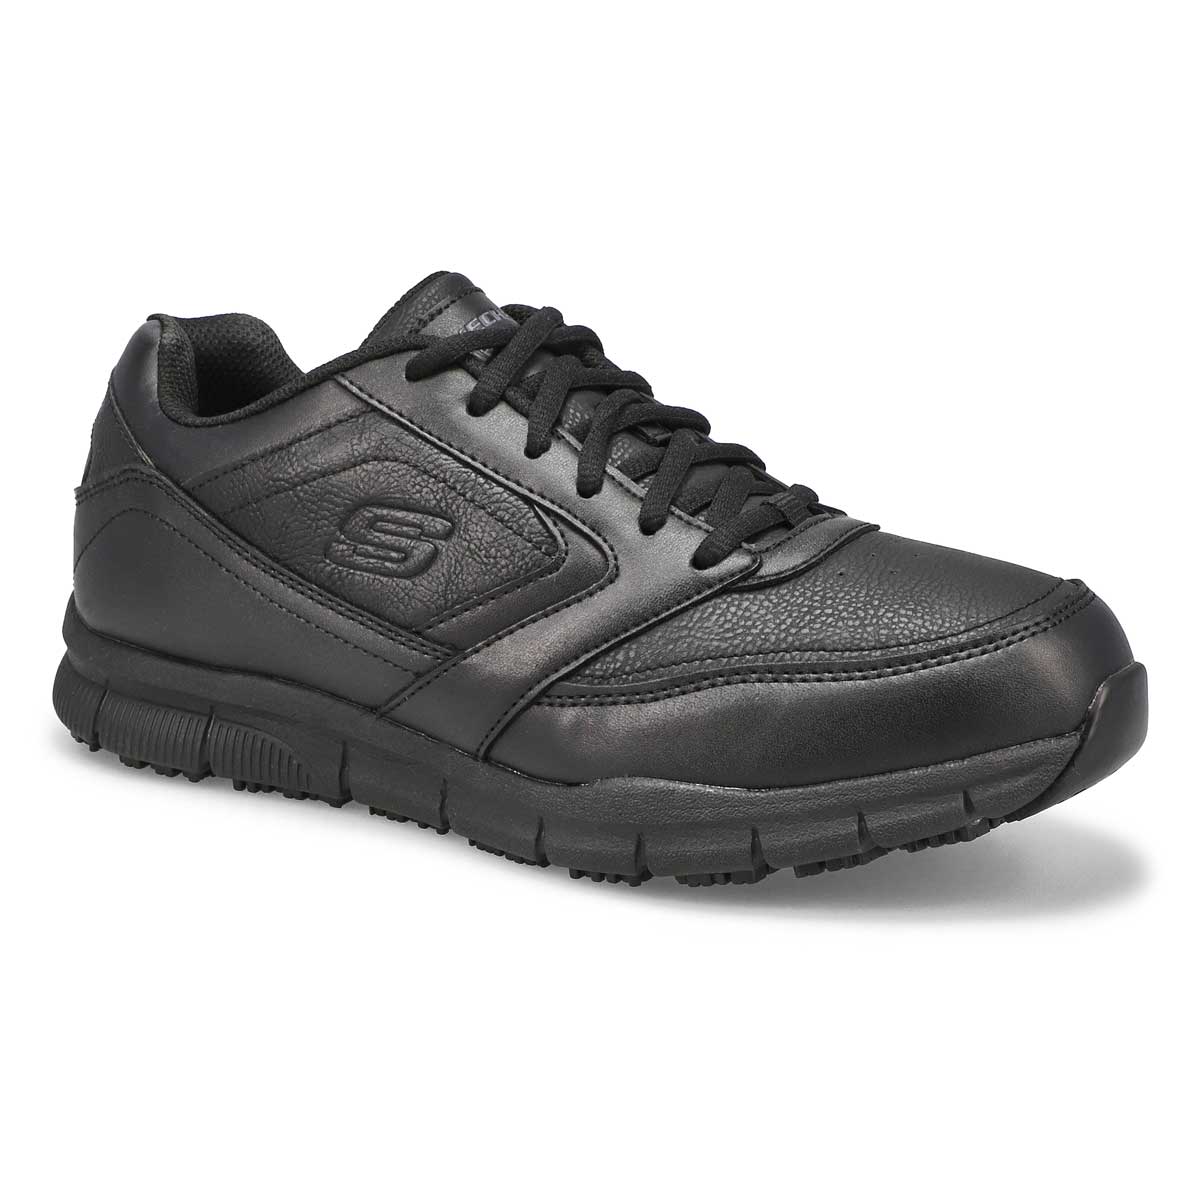 Men's Nampa Sneakers - Black